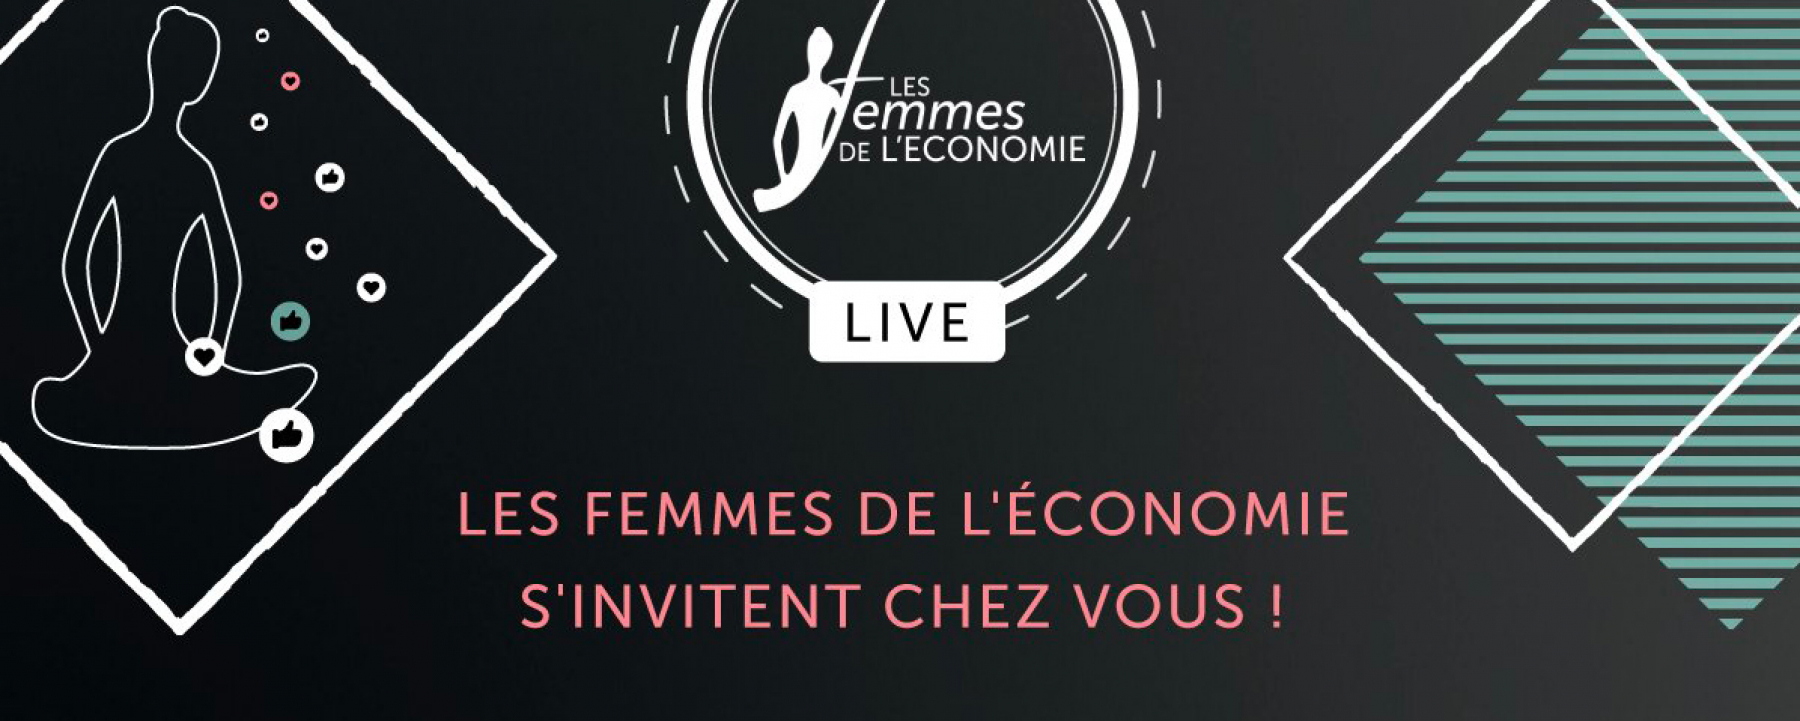 Trophée "Les femmes de l'économie", organisé par Les Femmes de l'économie le 24 septembre 